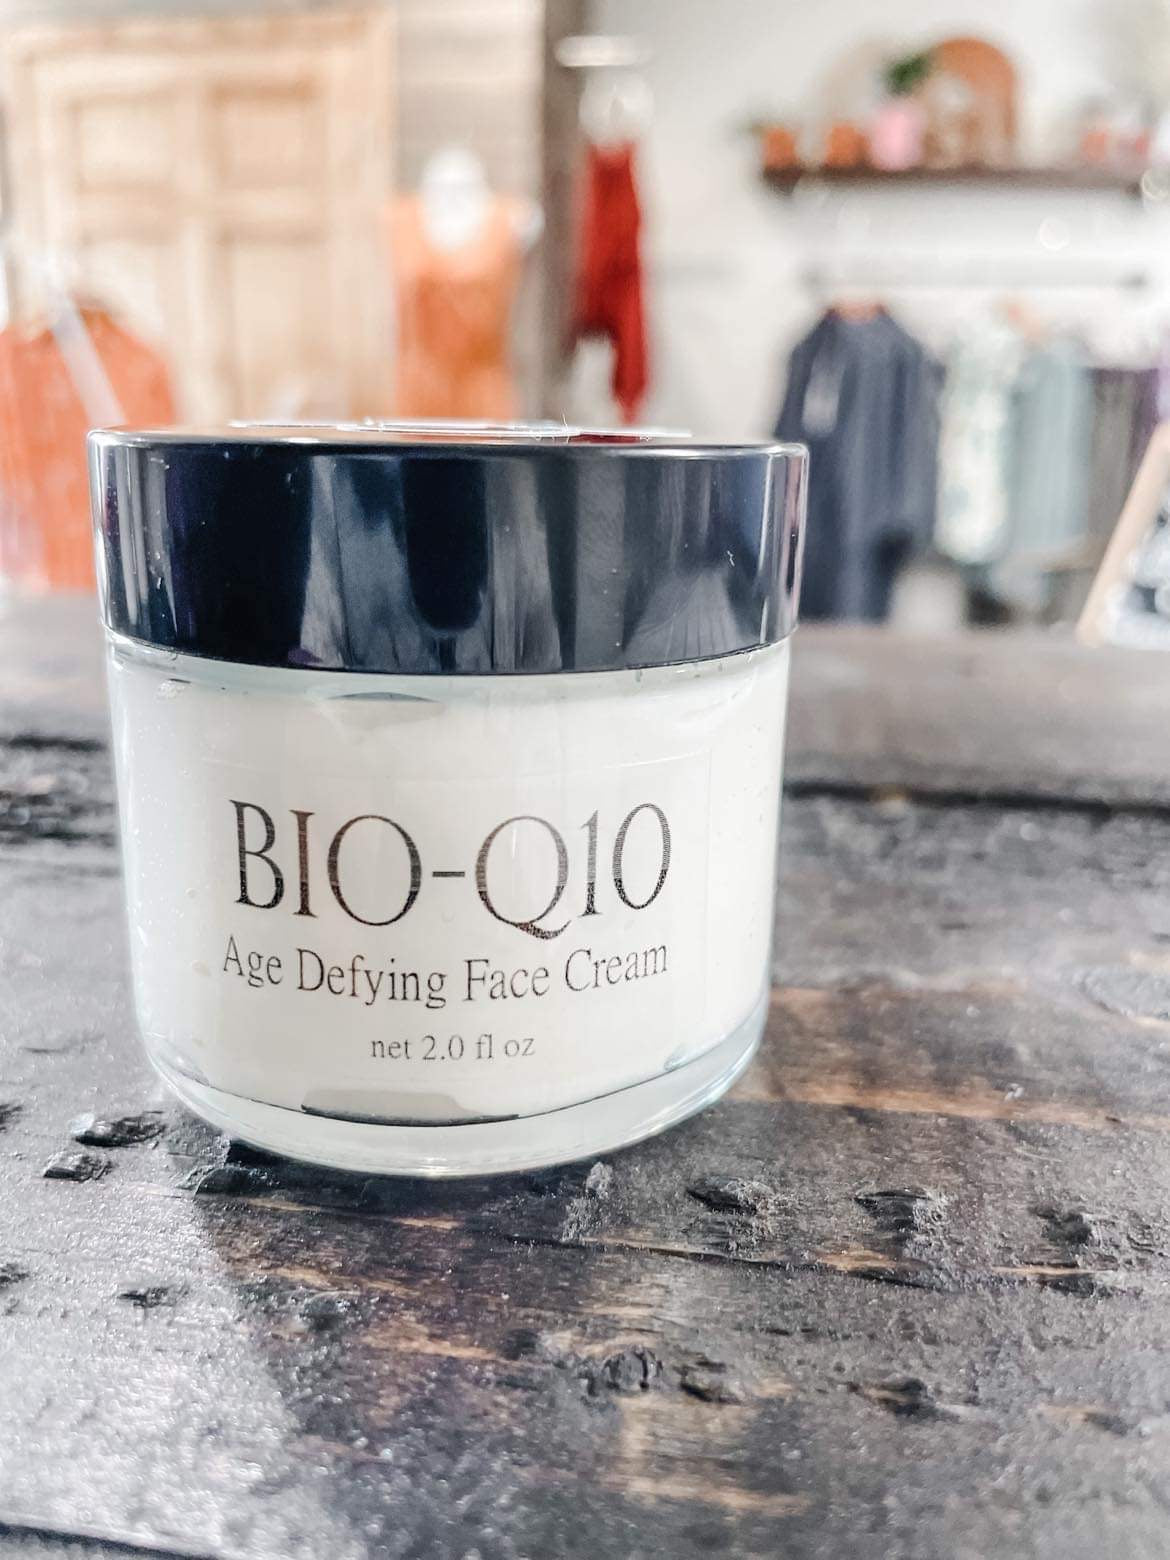 BIO-Q10 Age Defying Face Cream